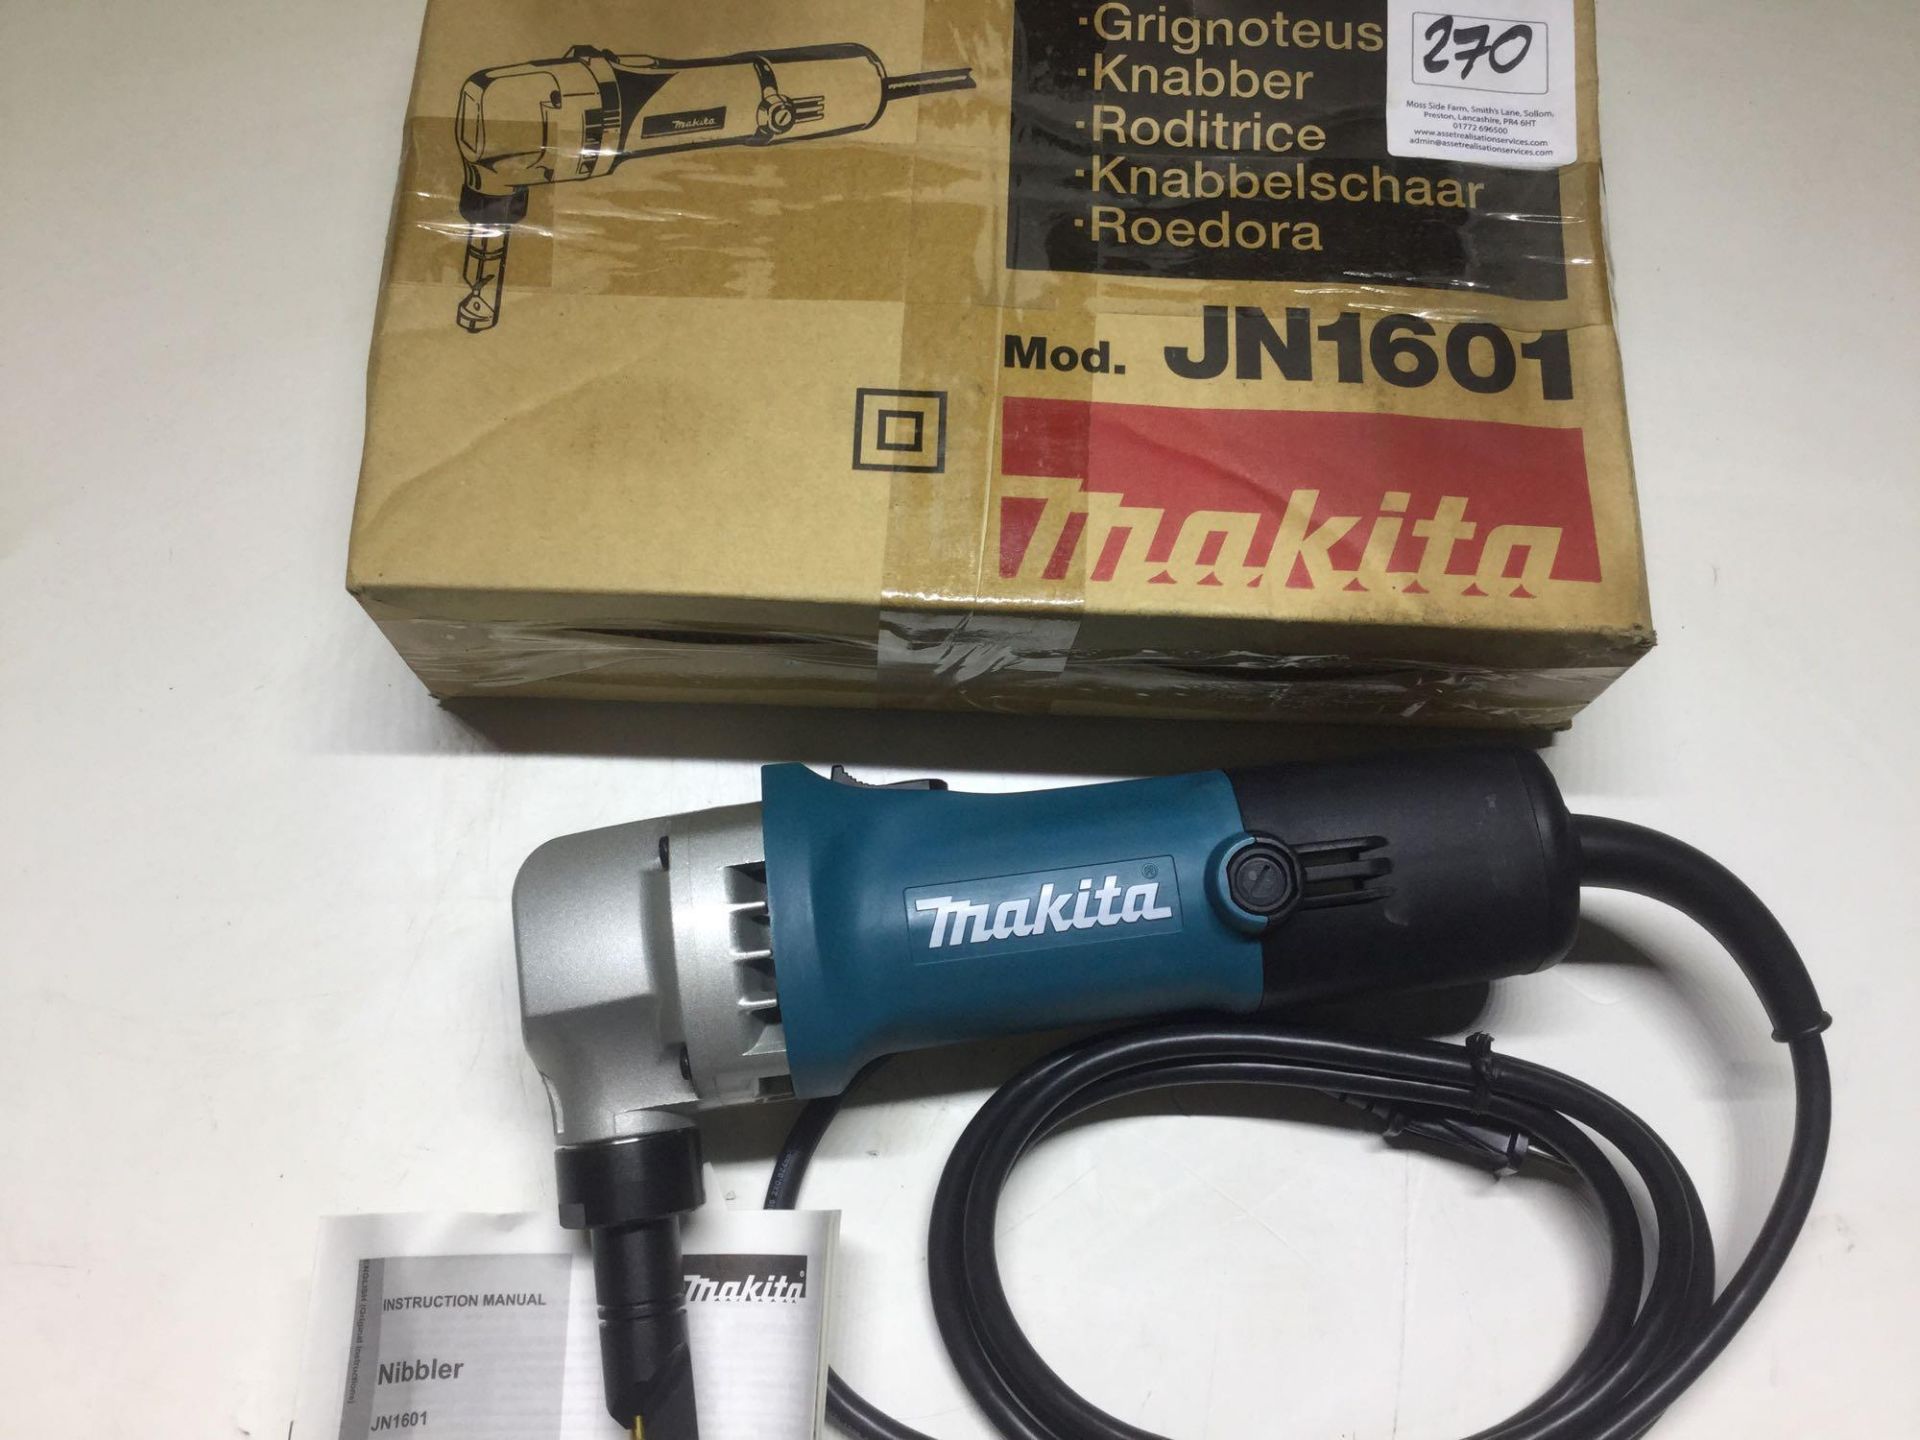 Makita JN1601 Nibbler 240v (New In Box) - Image 2 of 3